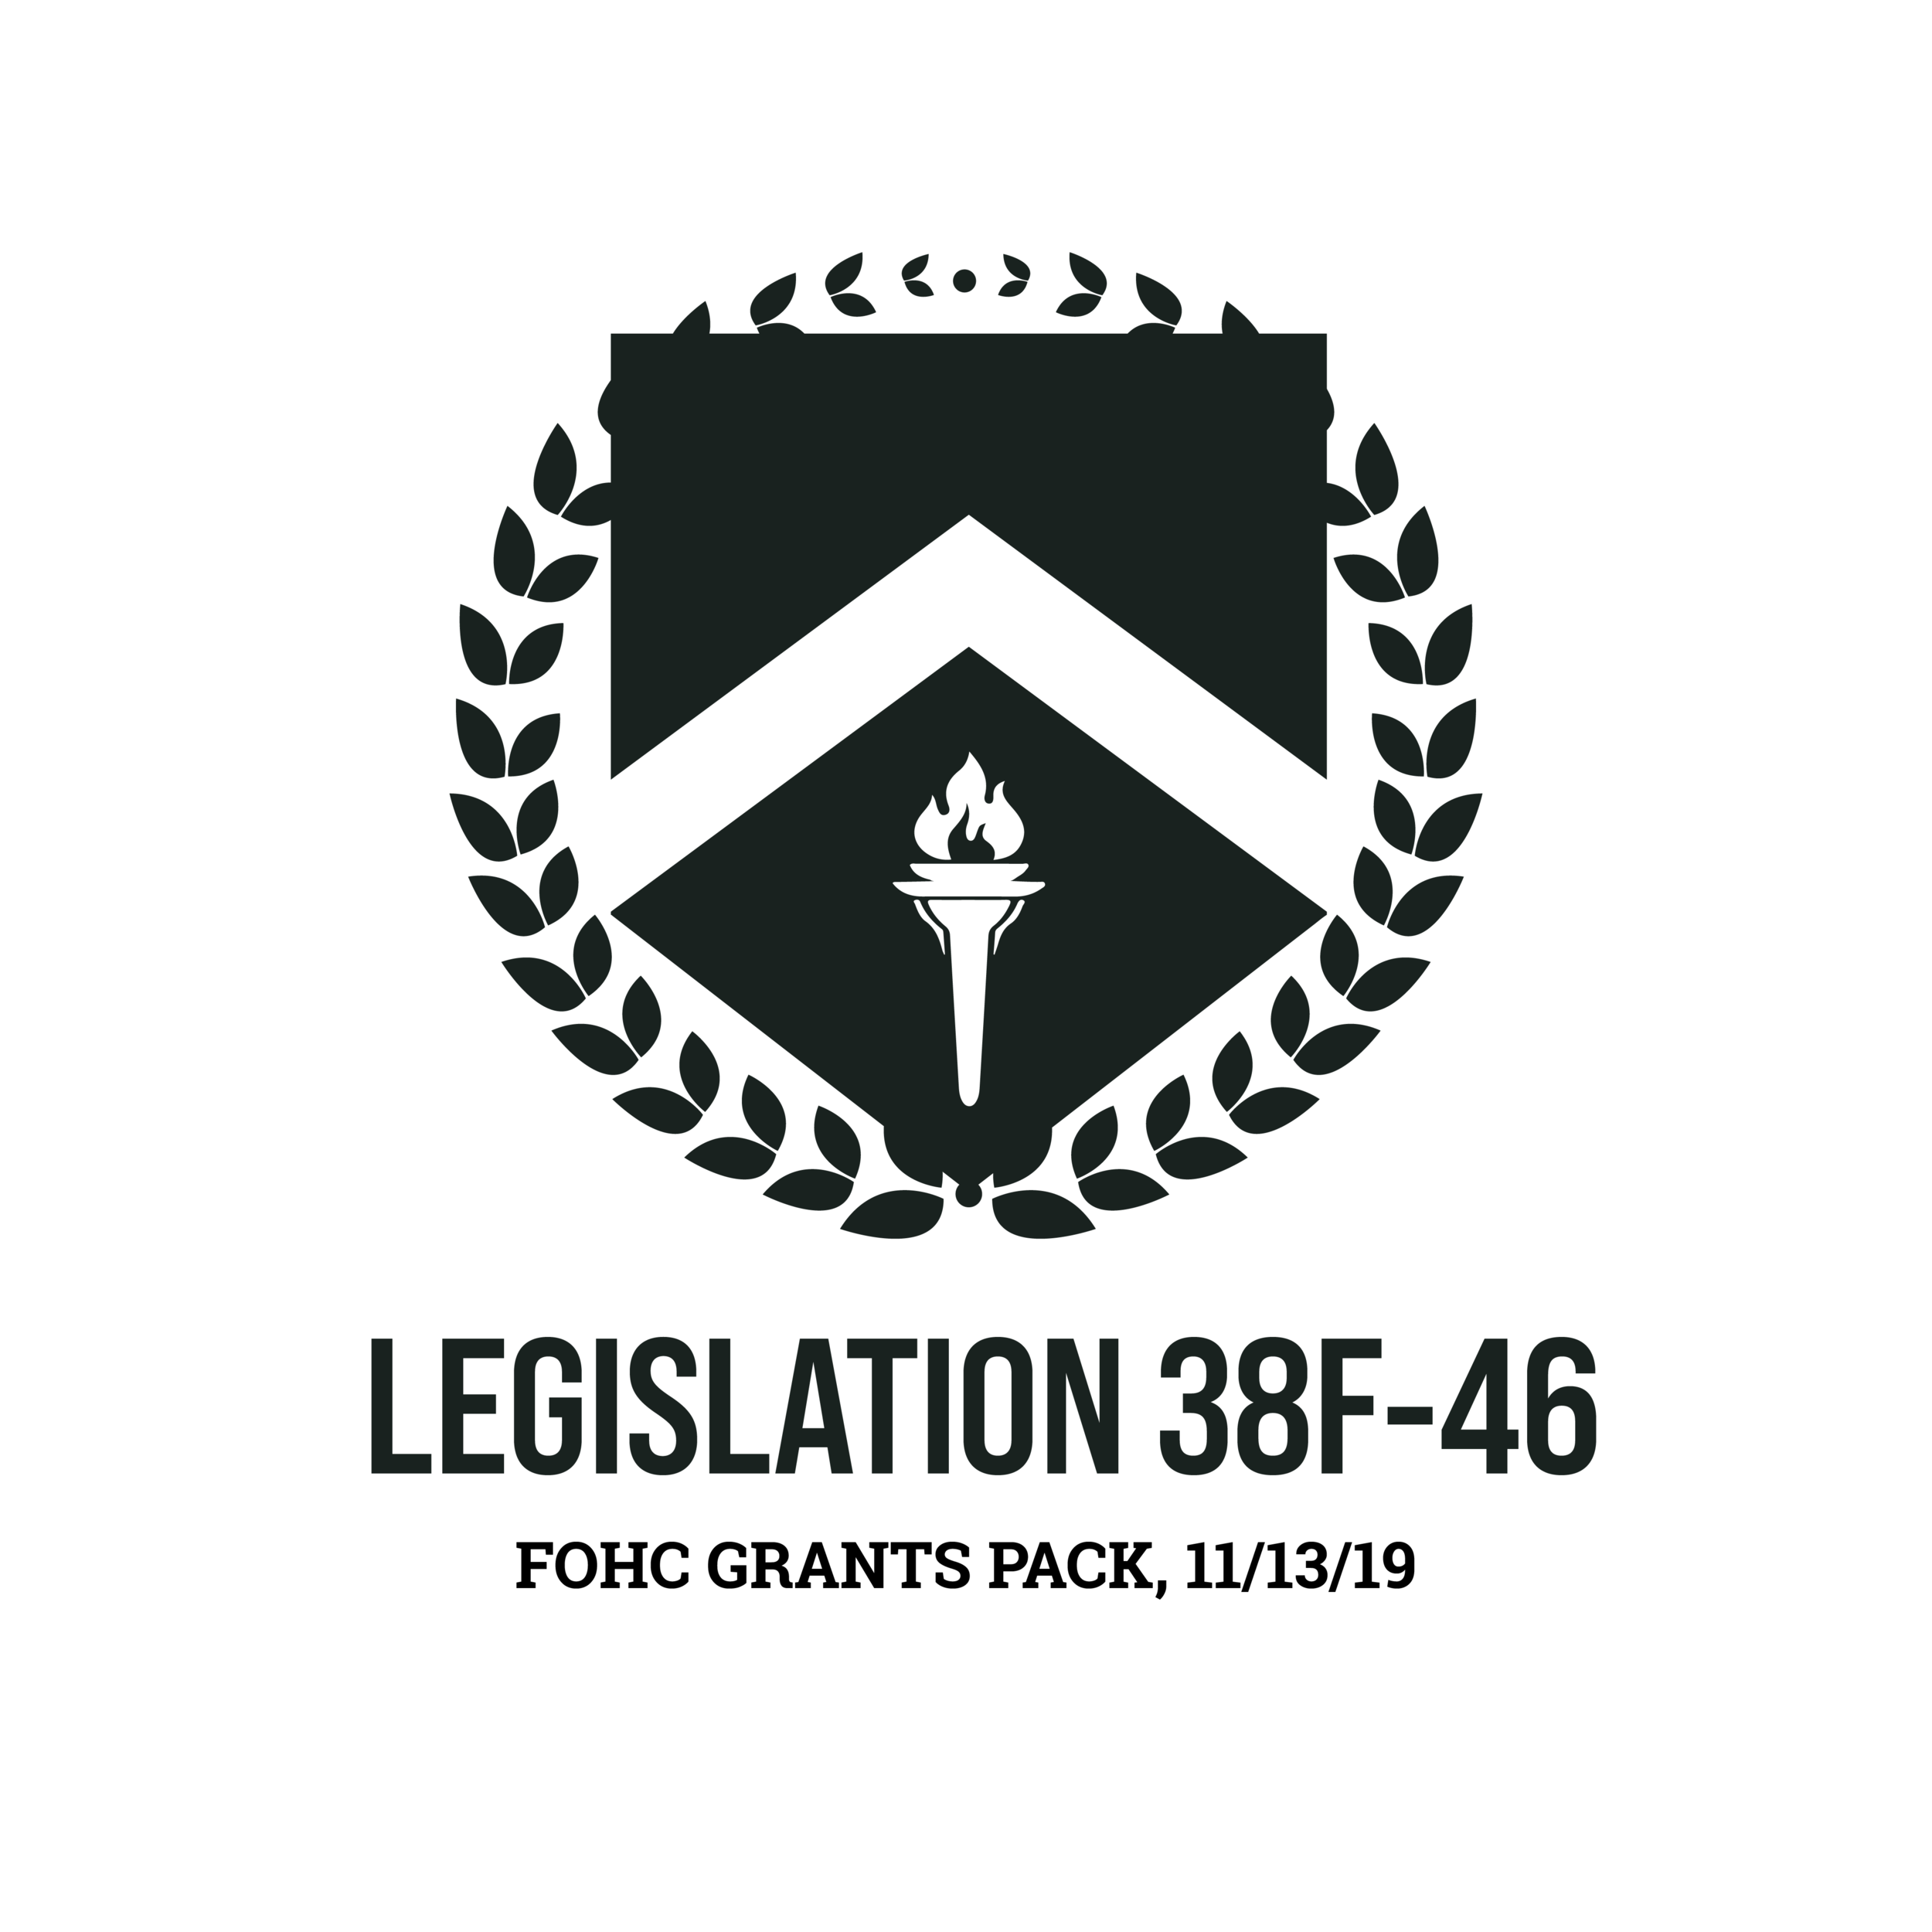 Legislation 38F-46: PASSED